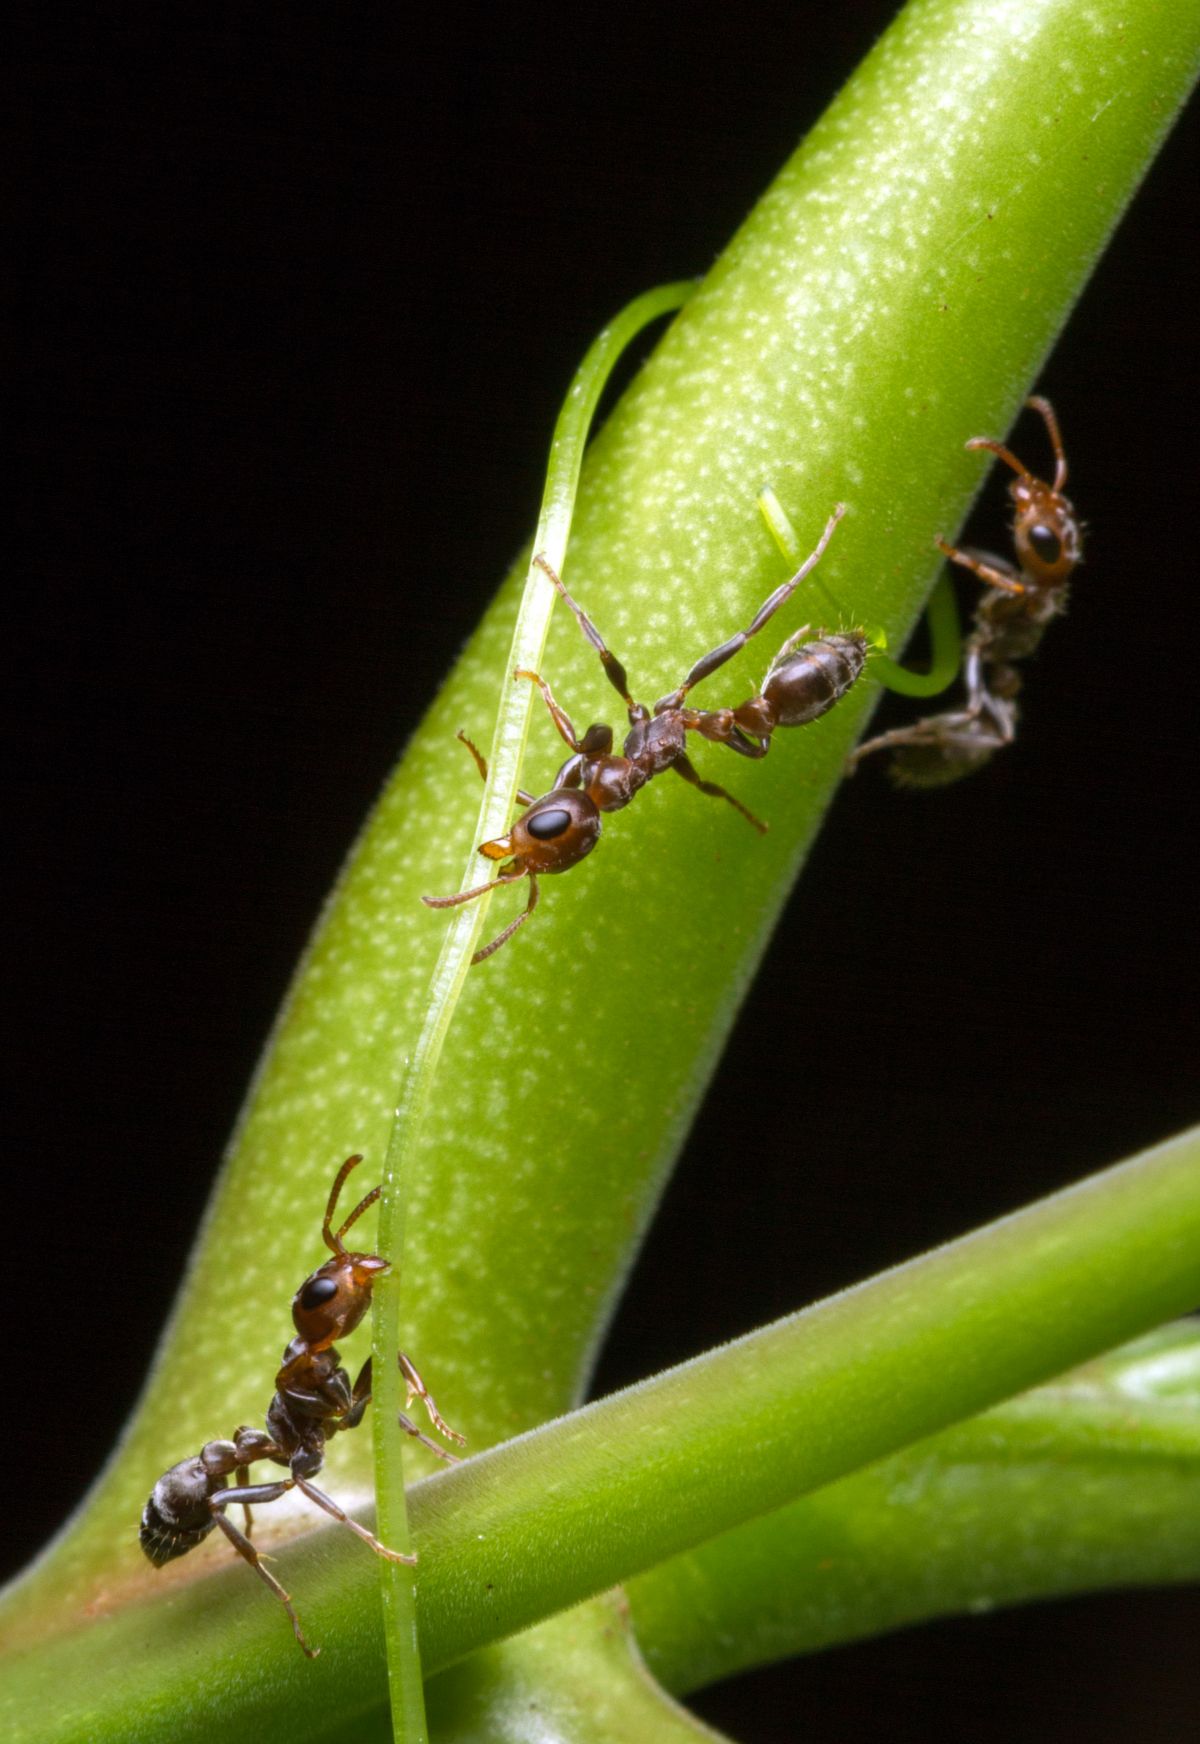 Diese Ameisen gehen mit Pflanzen eine enge Beziehung ein, die zu beideseitigem Nutzen ist: Die Ameisen verteidigen die Pflanze und bekommen im Gegenzug Nahrung und einen sicheren Platz zum Leben.
